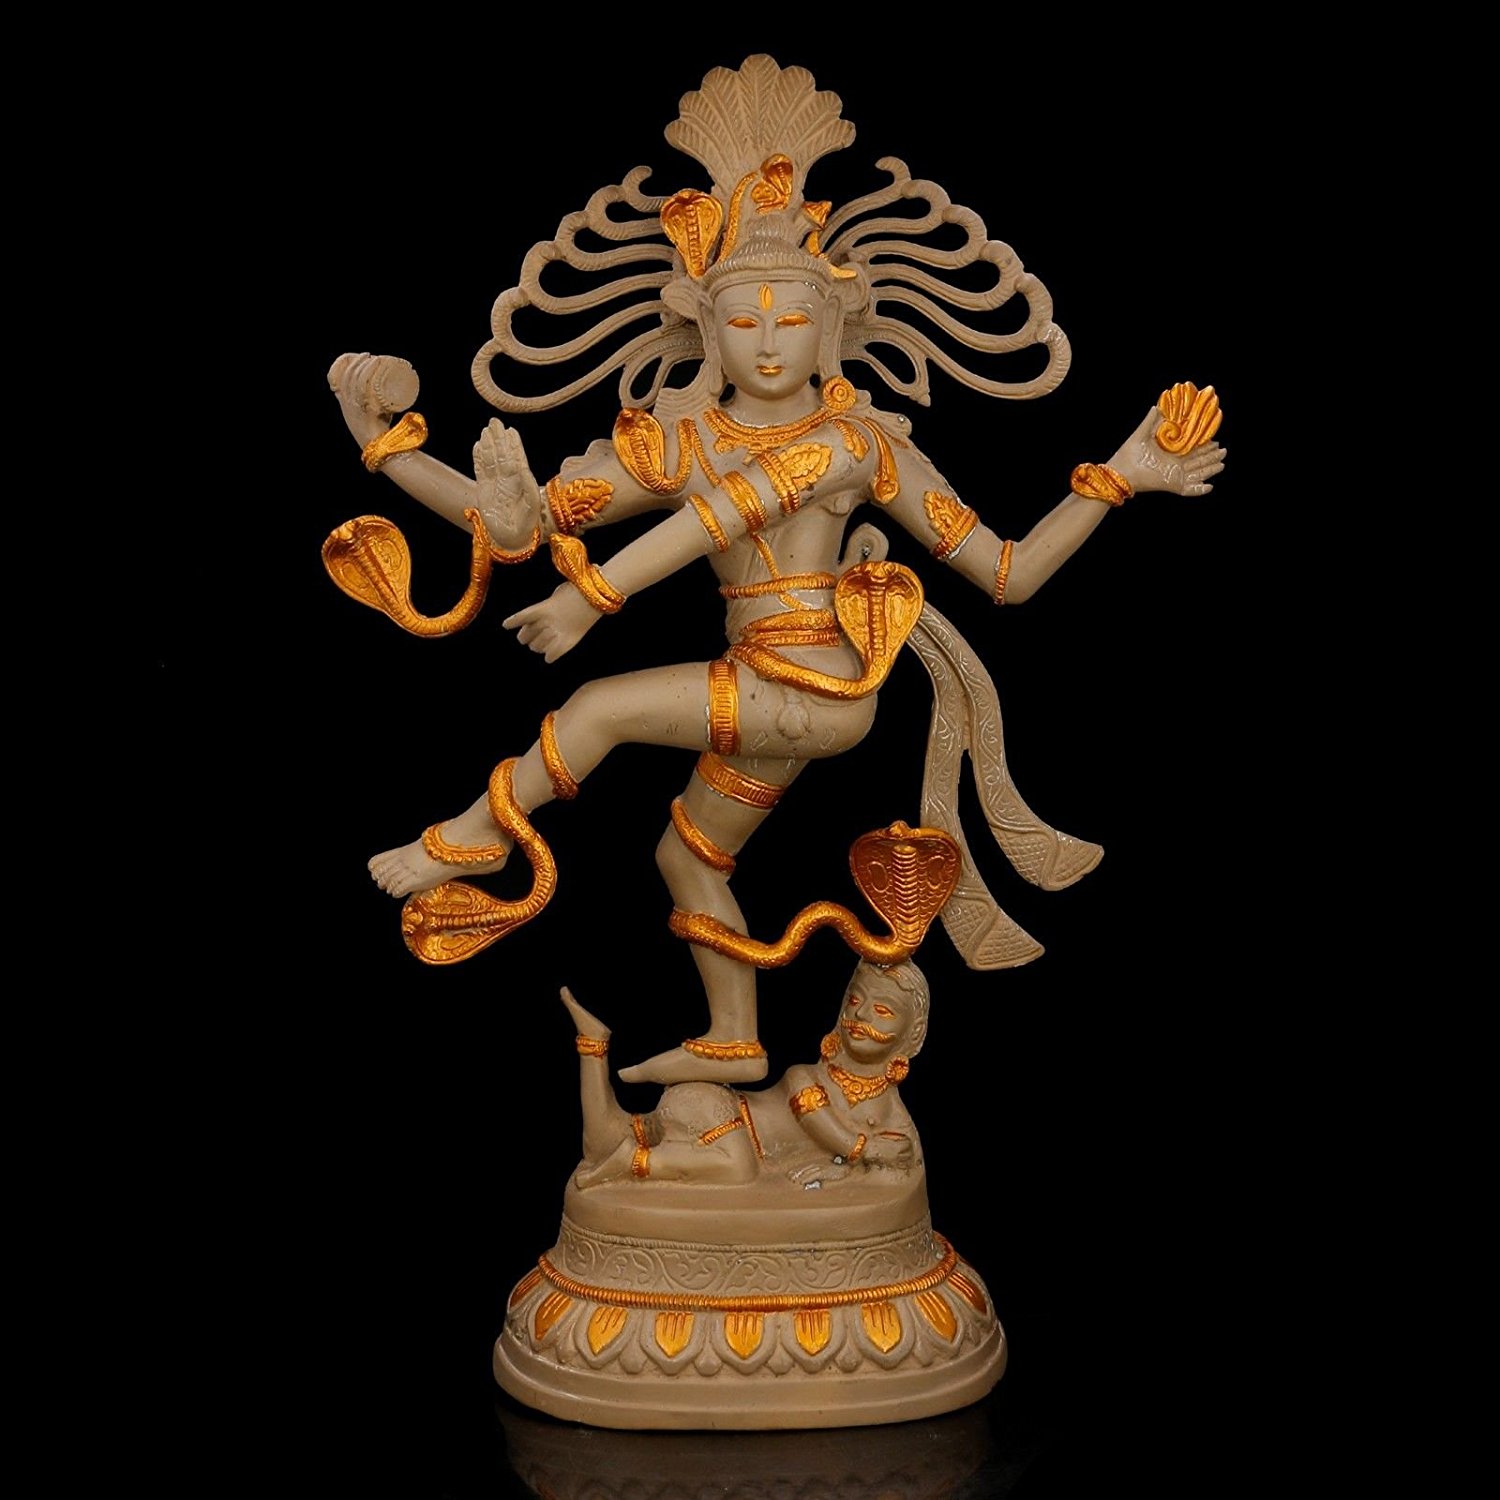 Buy Collectible India 21 inch Large Nataraja Shiva Idol Religious ...